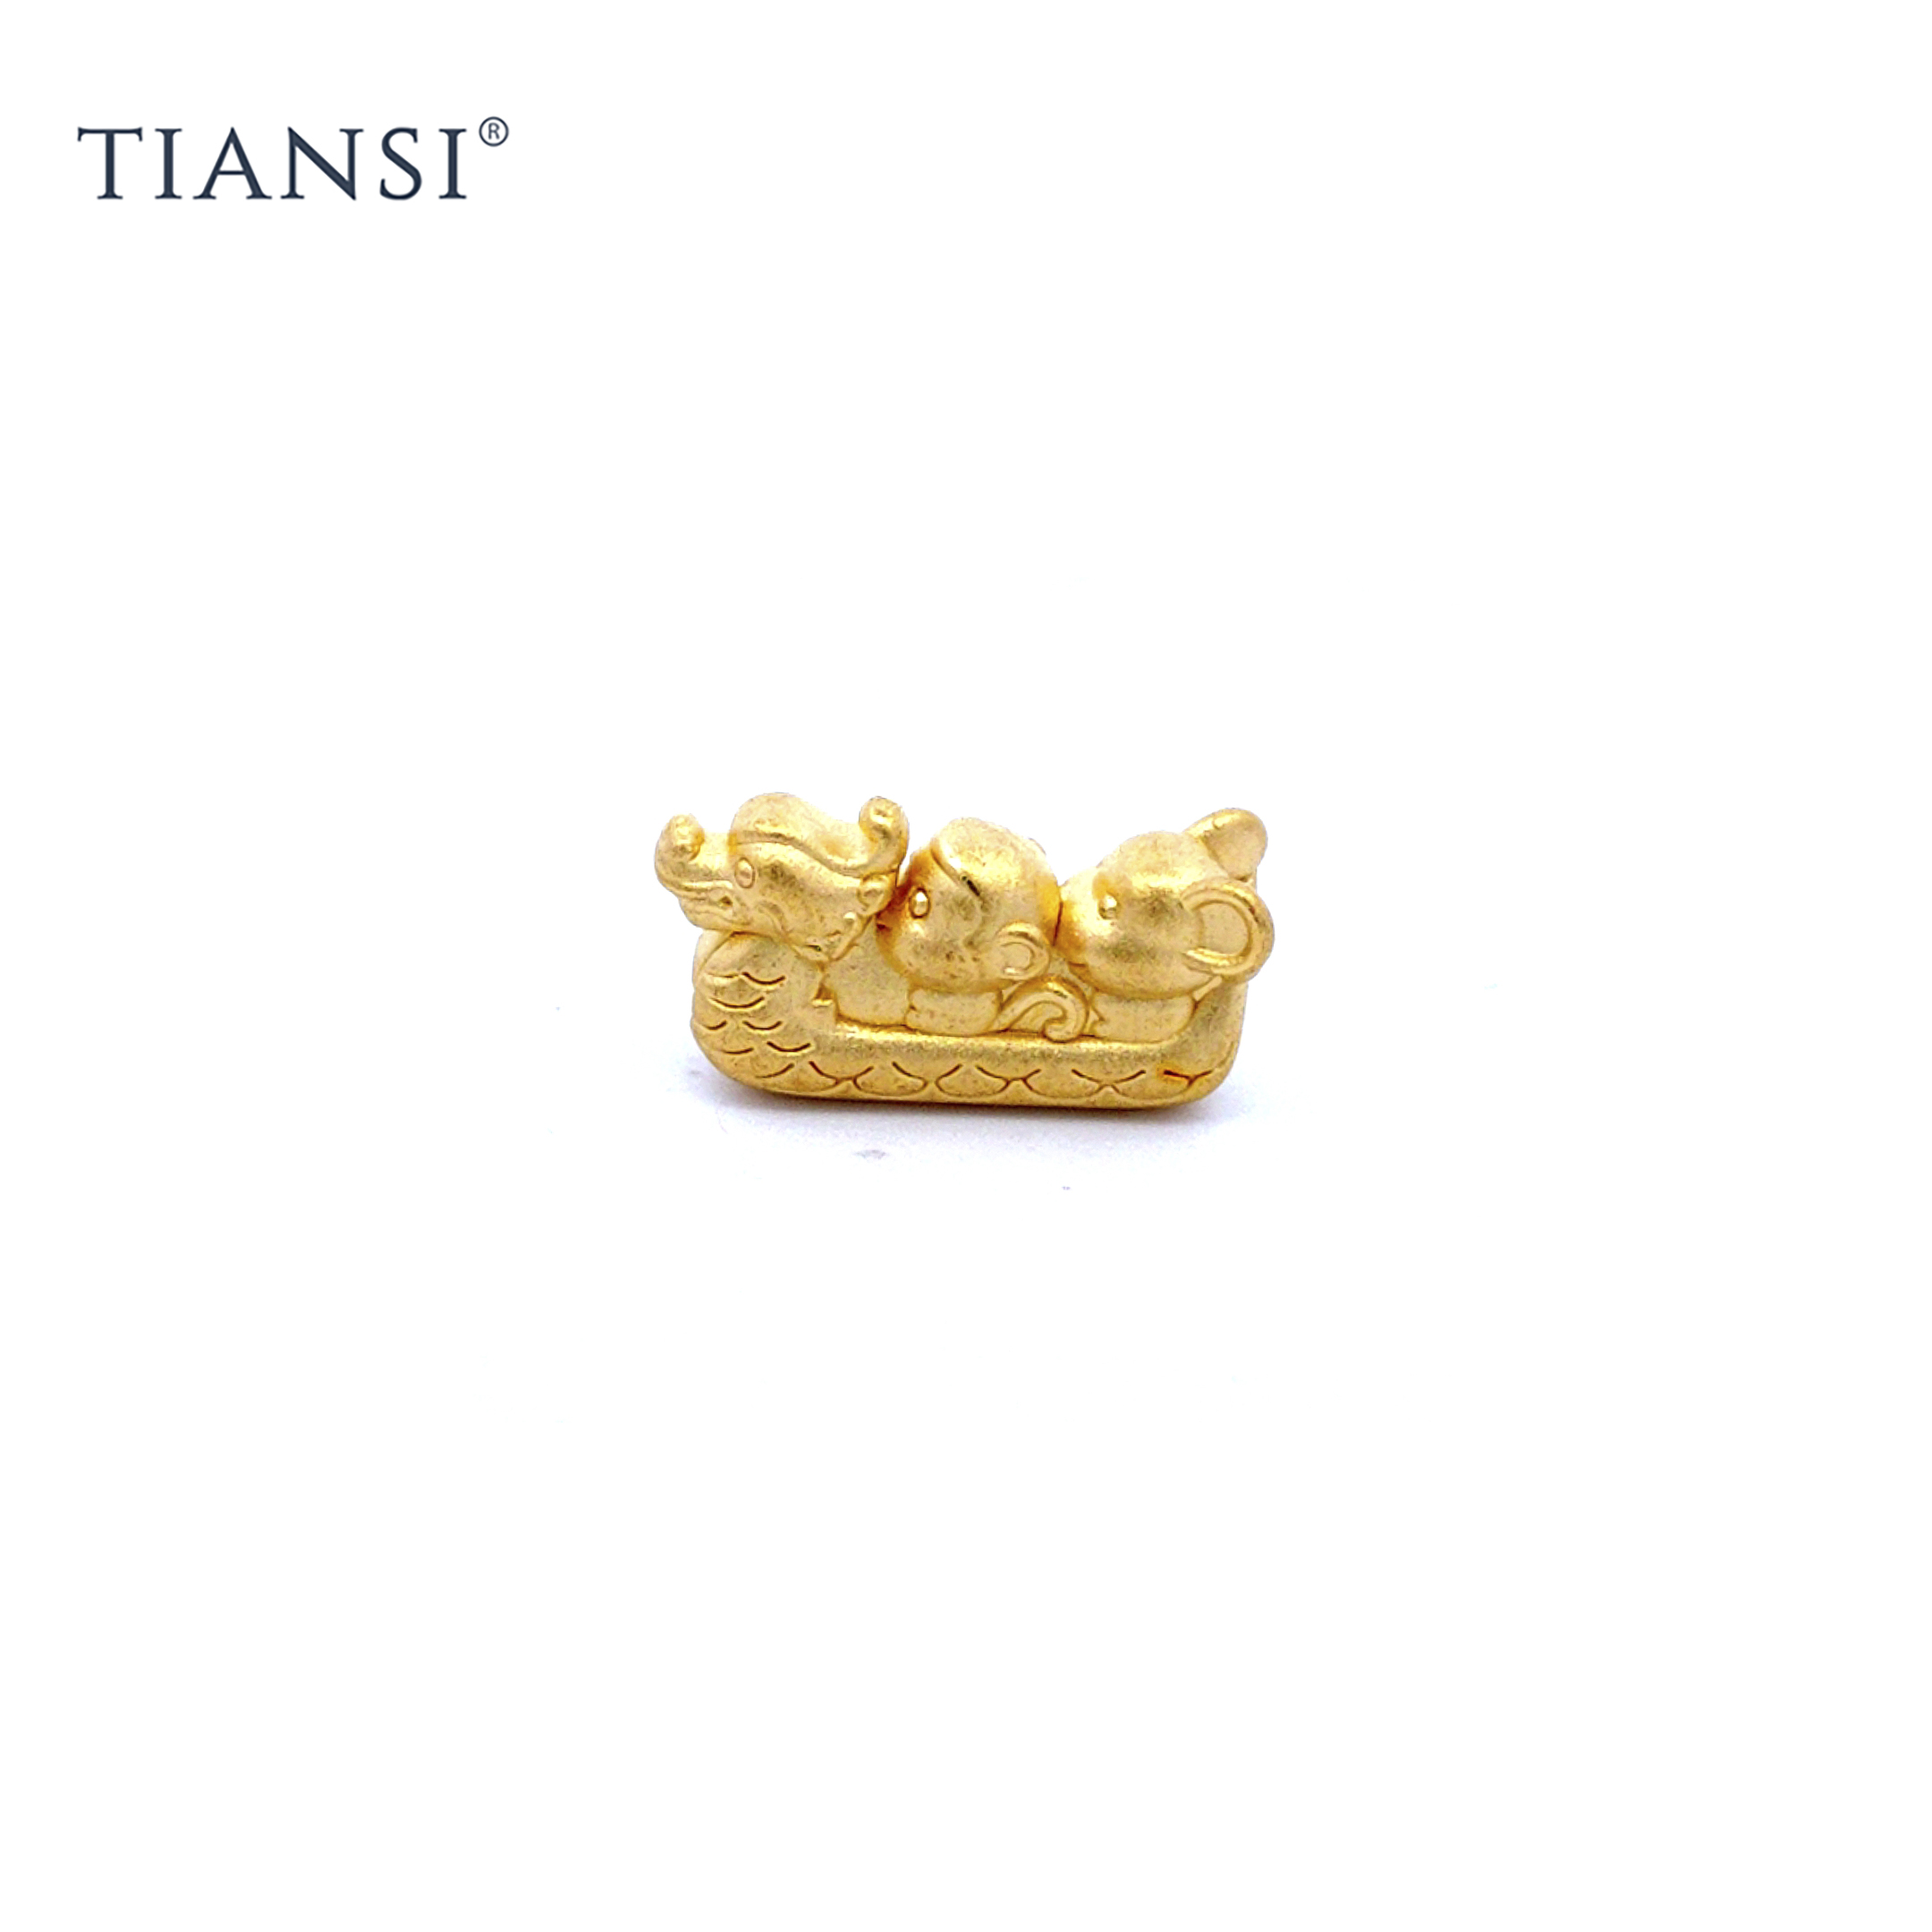 TIANSI 999(24K) Gold Dragon Monkey Mouse Charm